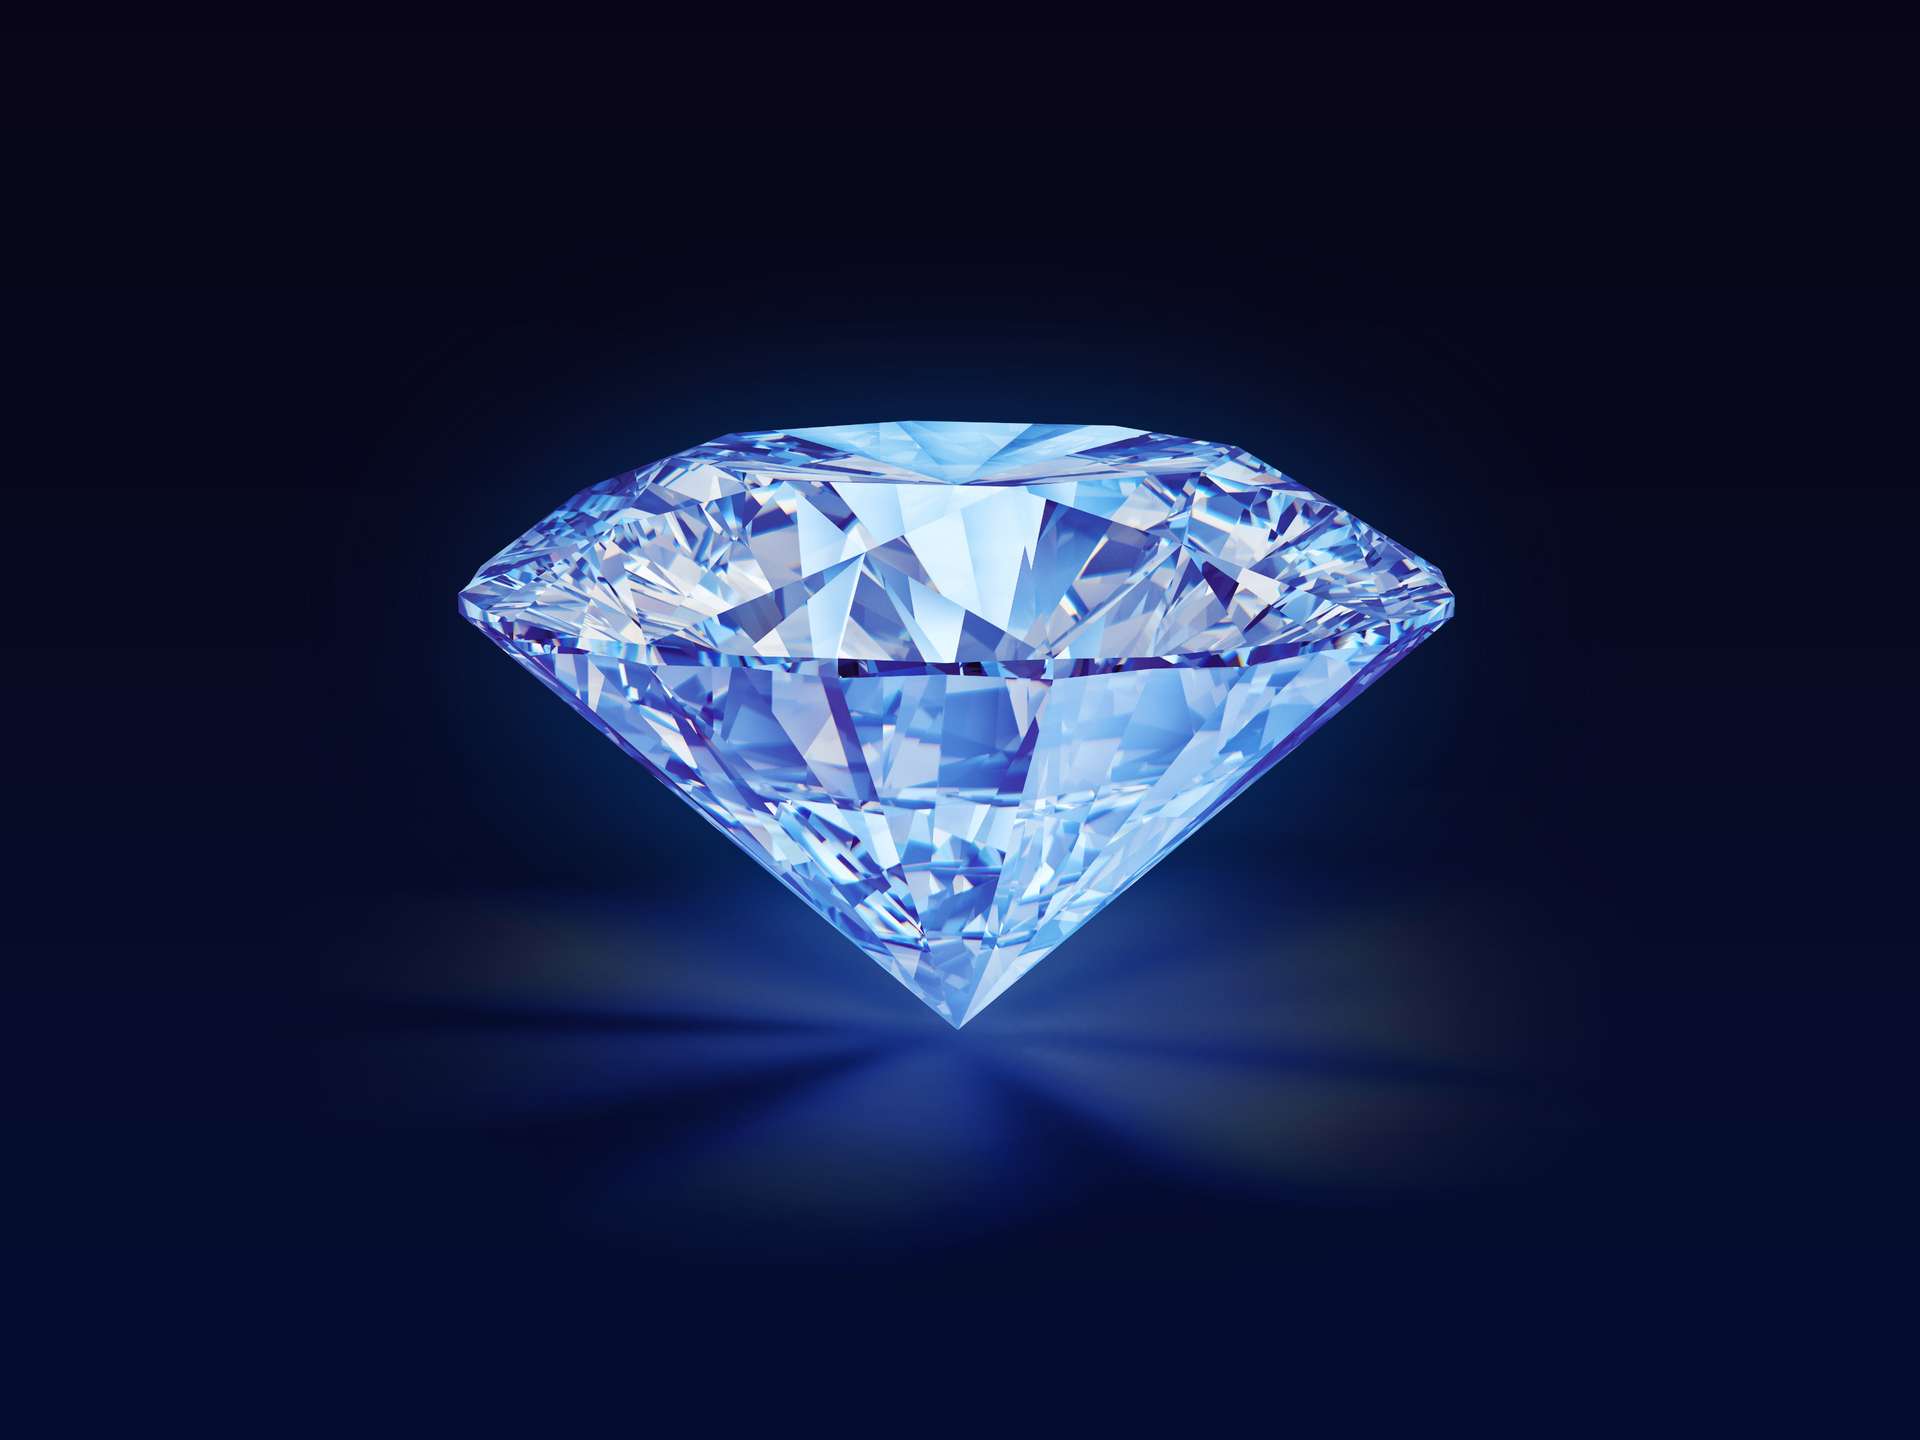 Résultat de recherche d'images pour "fond d écran diamant bleu"